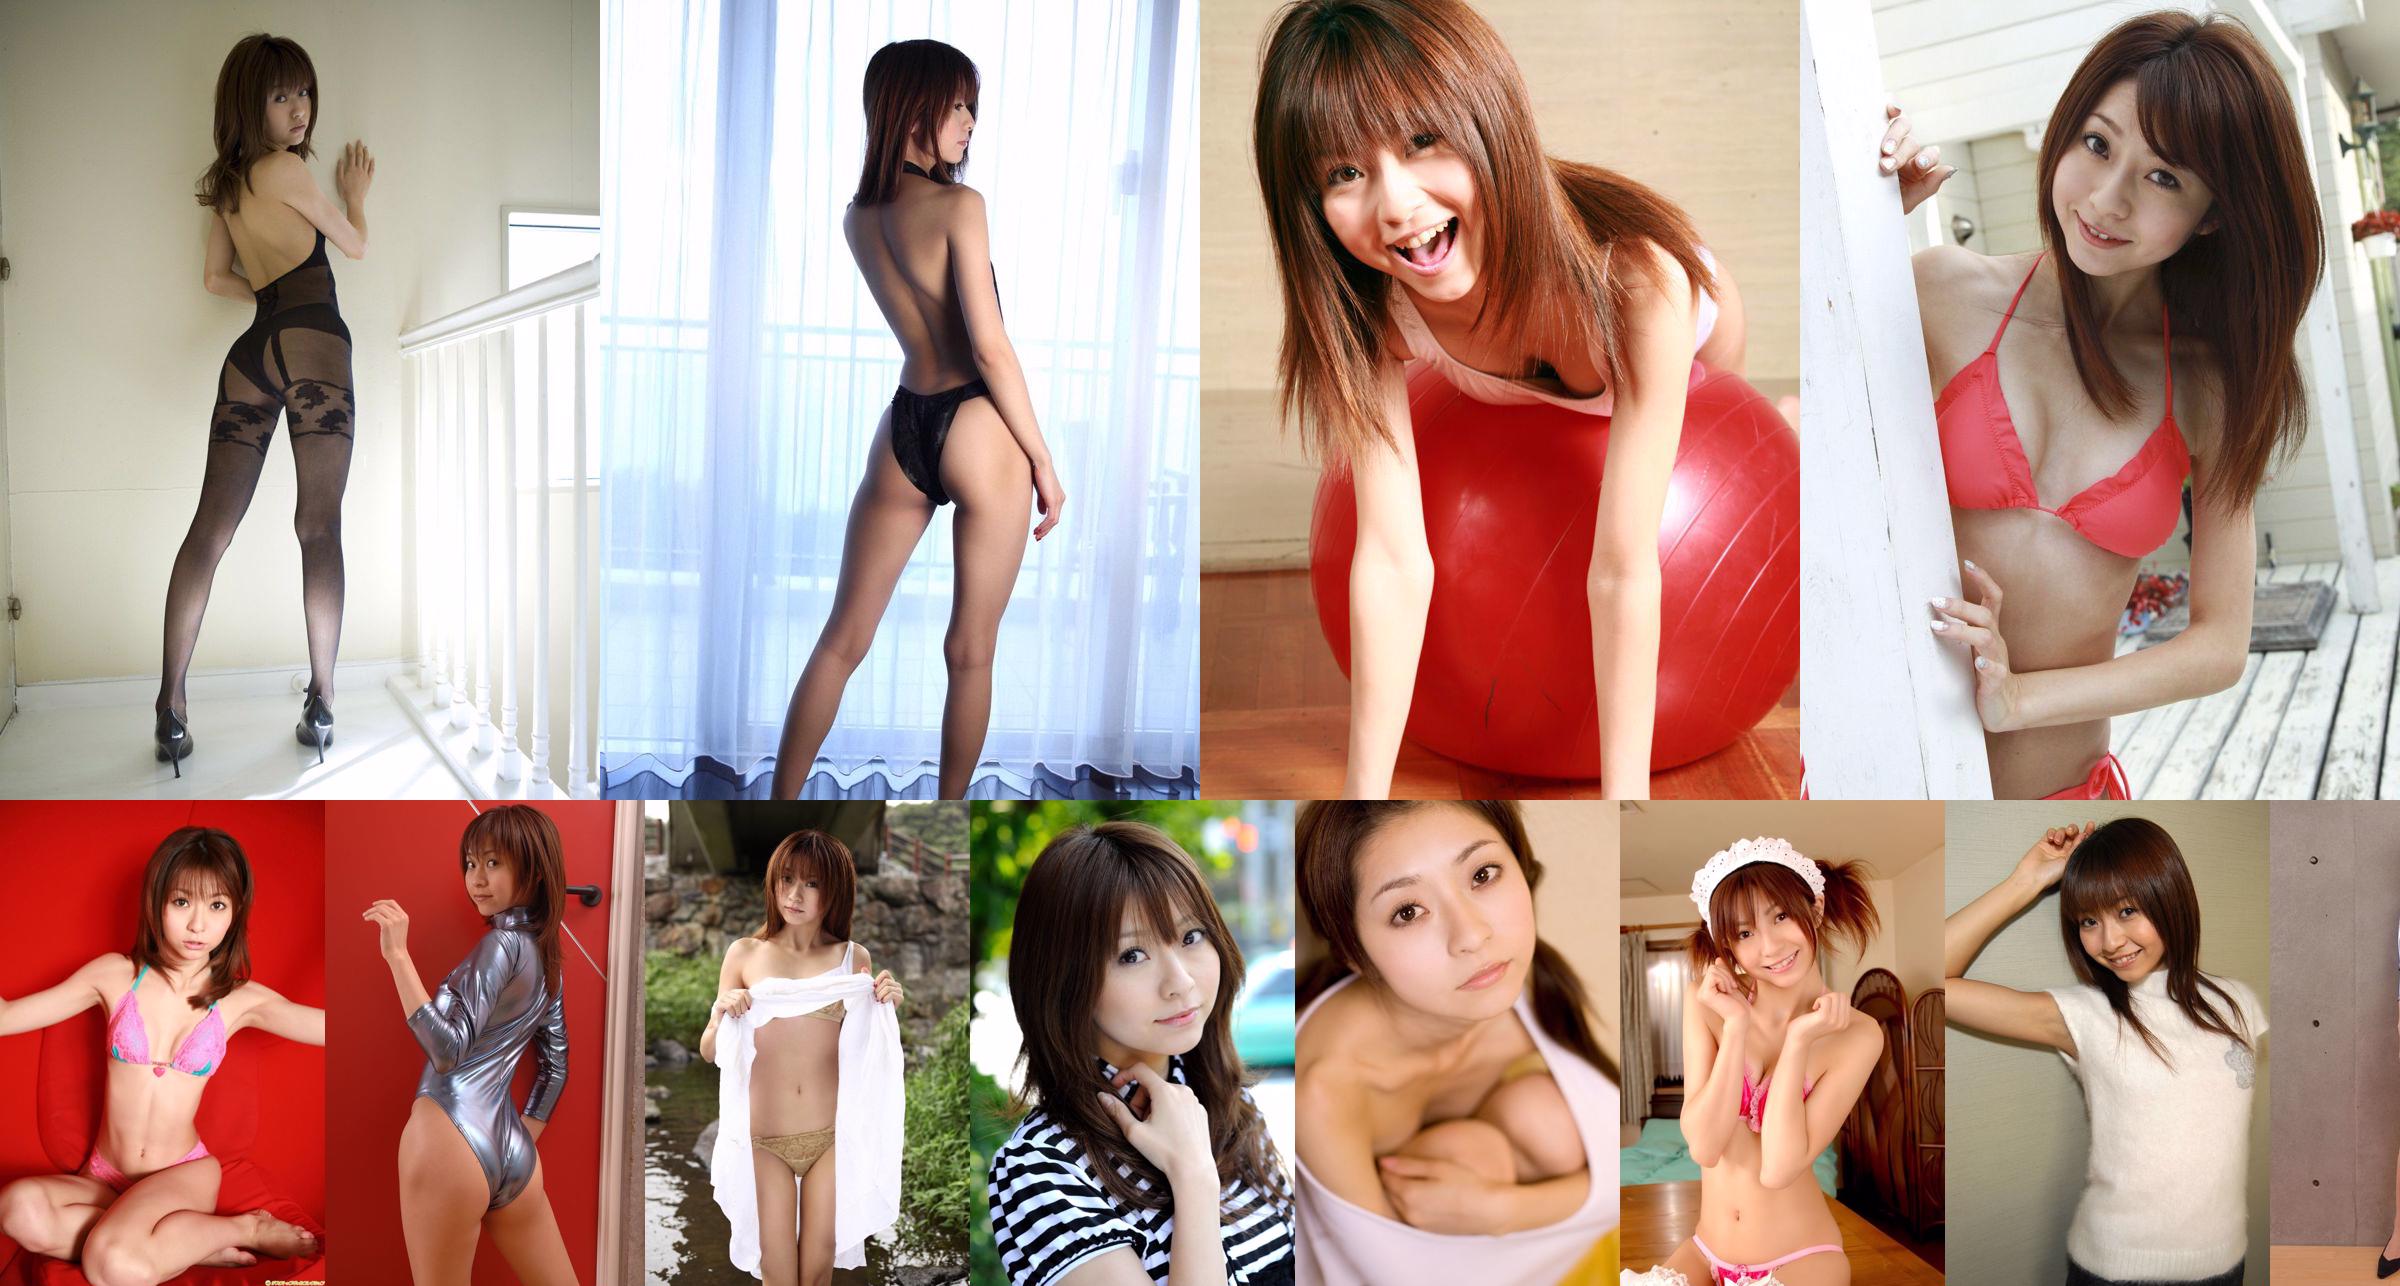 [BWH] BWH0144 Orihara Misaki "Prise de vue en studio avec une jolie fille" No.439e3a Page 9